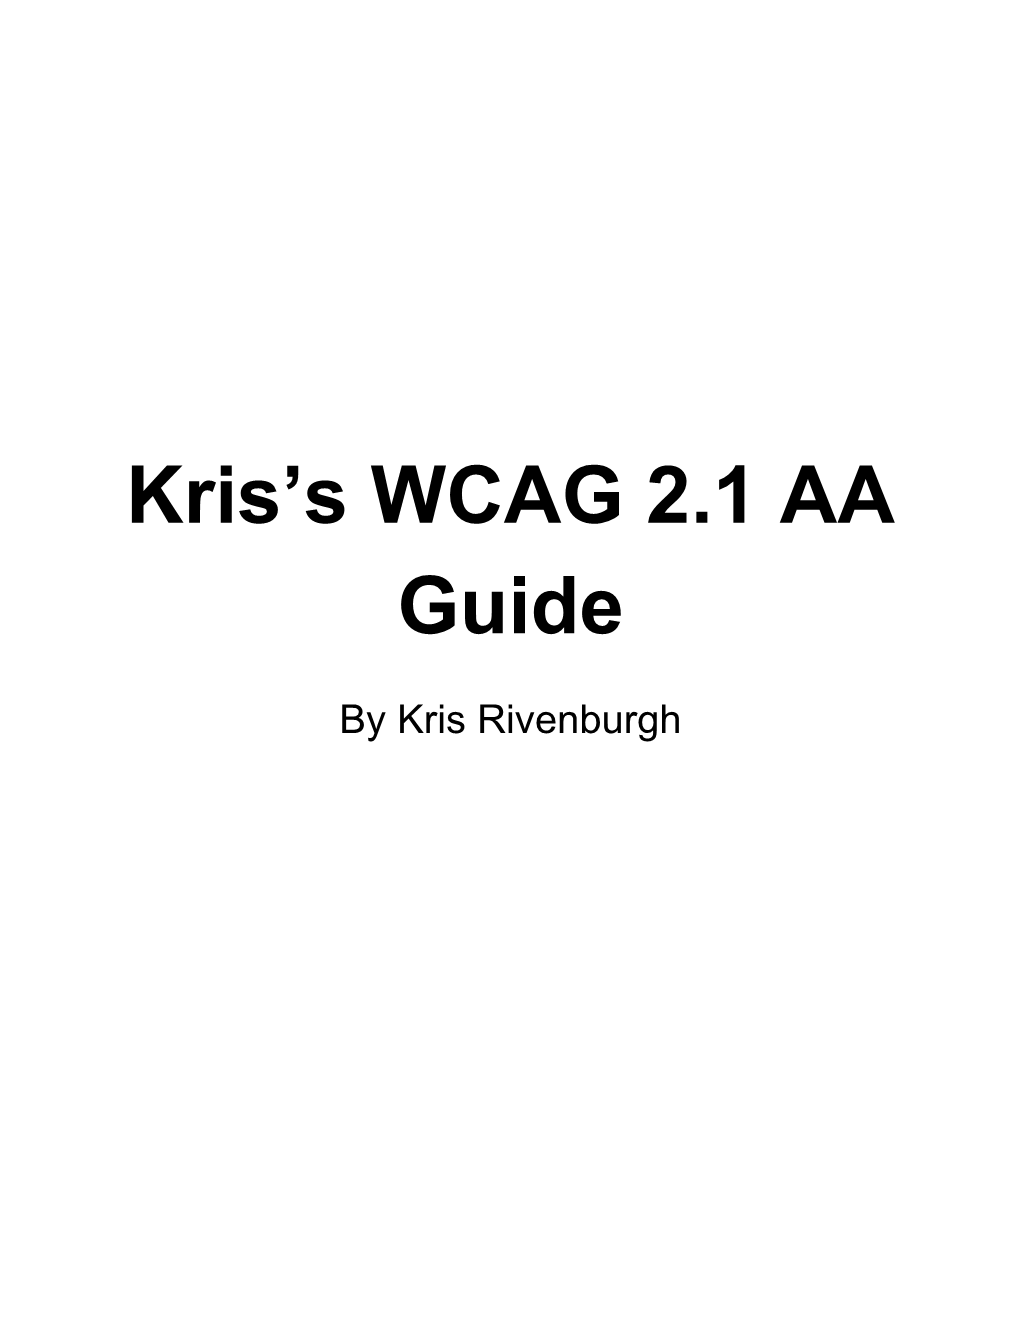 Kris's WCAG 2.1 AA Guide